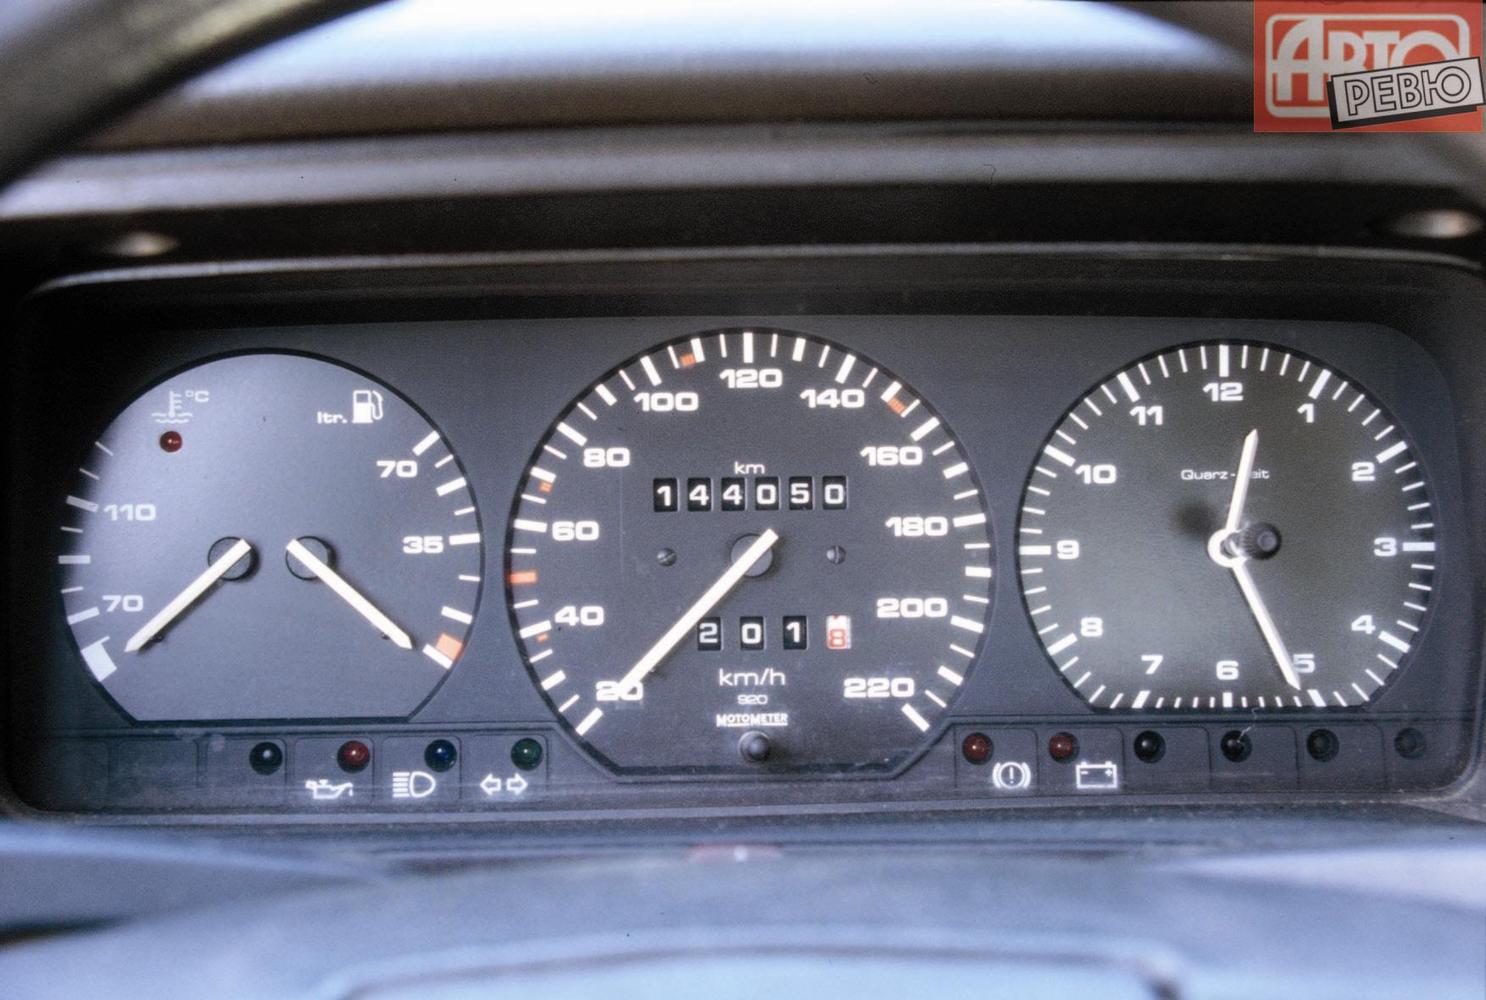 седан Volkswagen Passat 1988 - 1993г выпуска модификация 1.6 MT (72 л.с.)